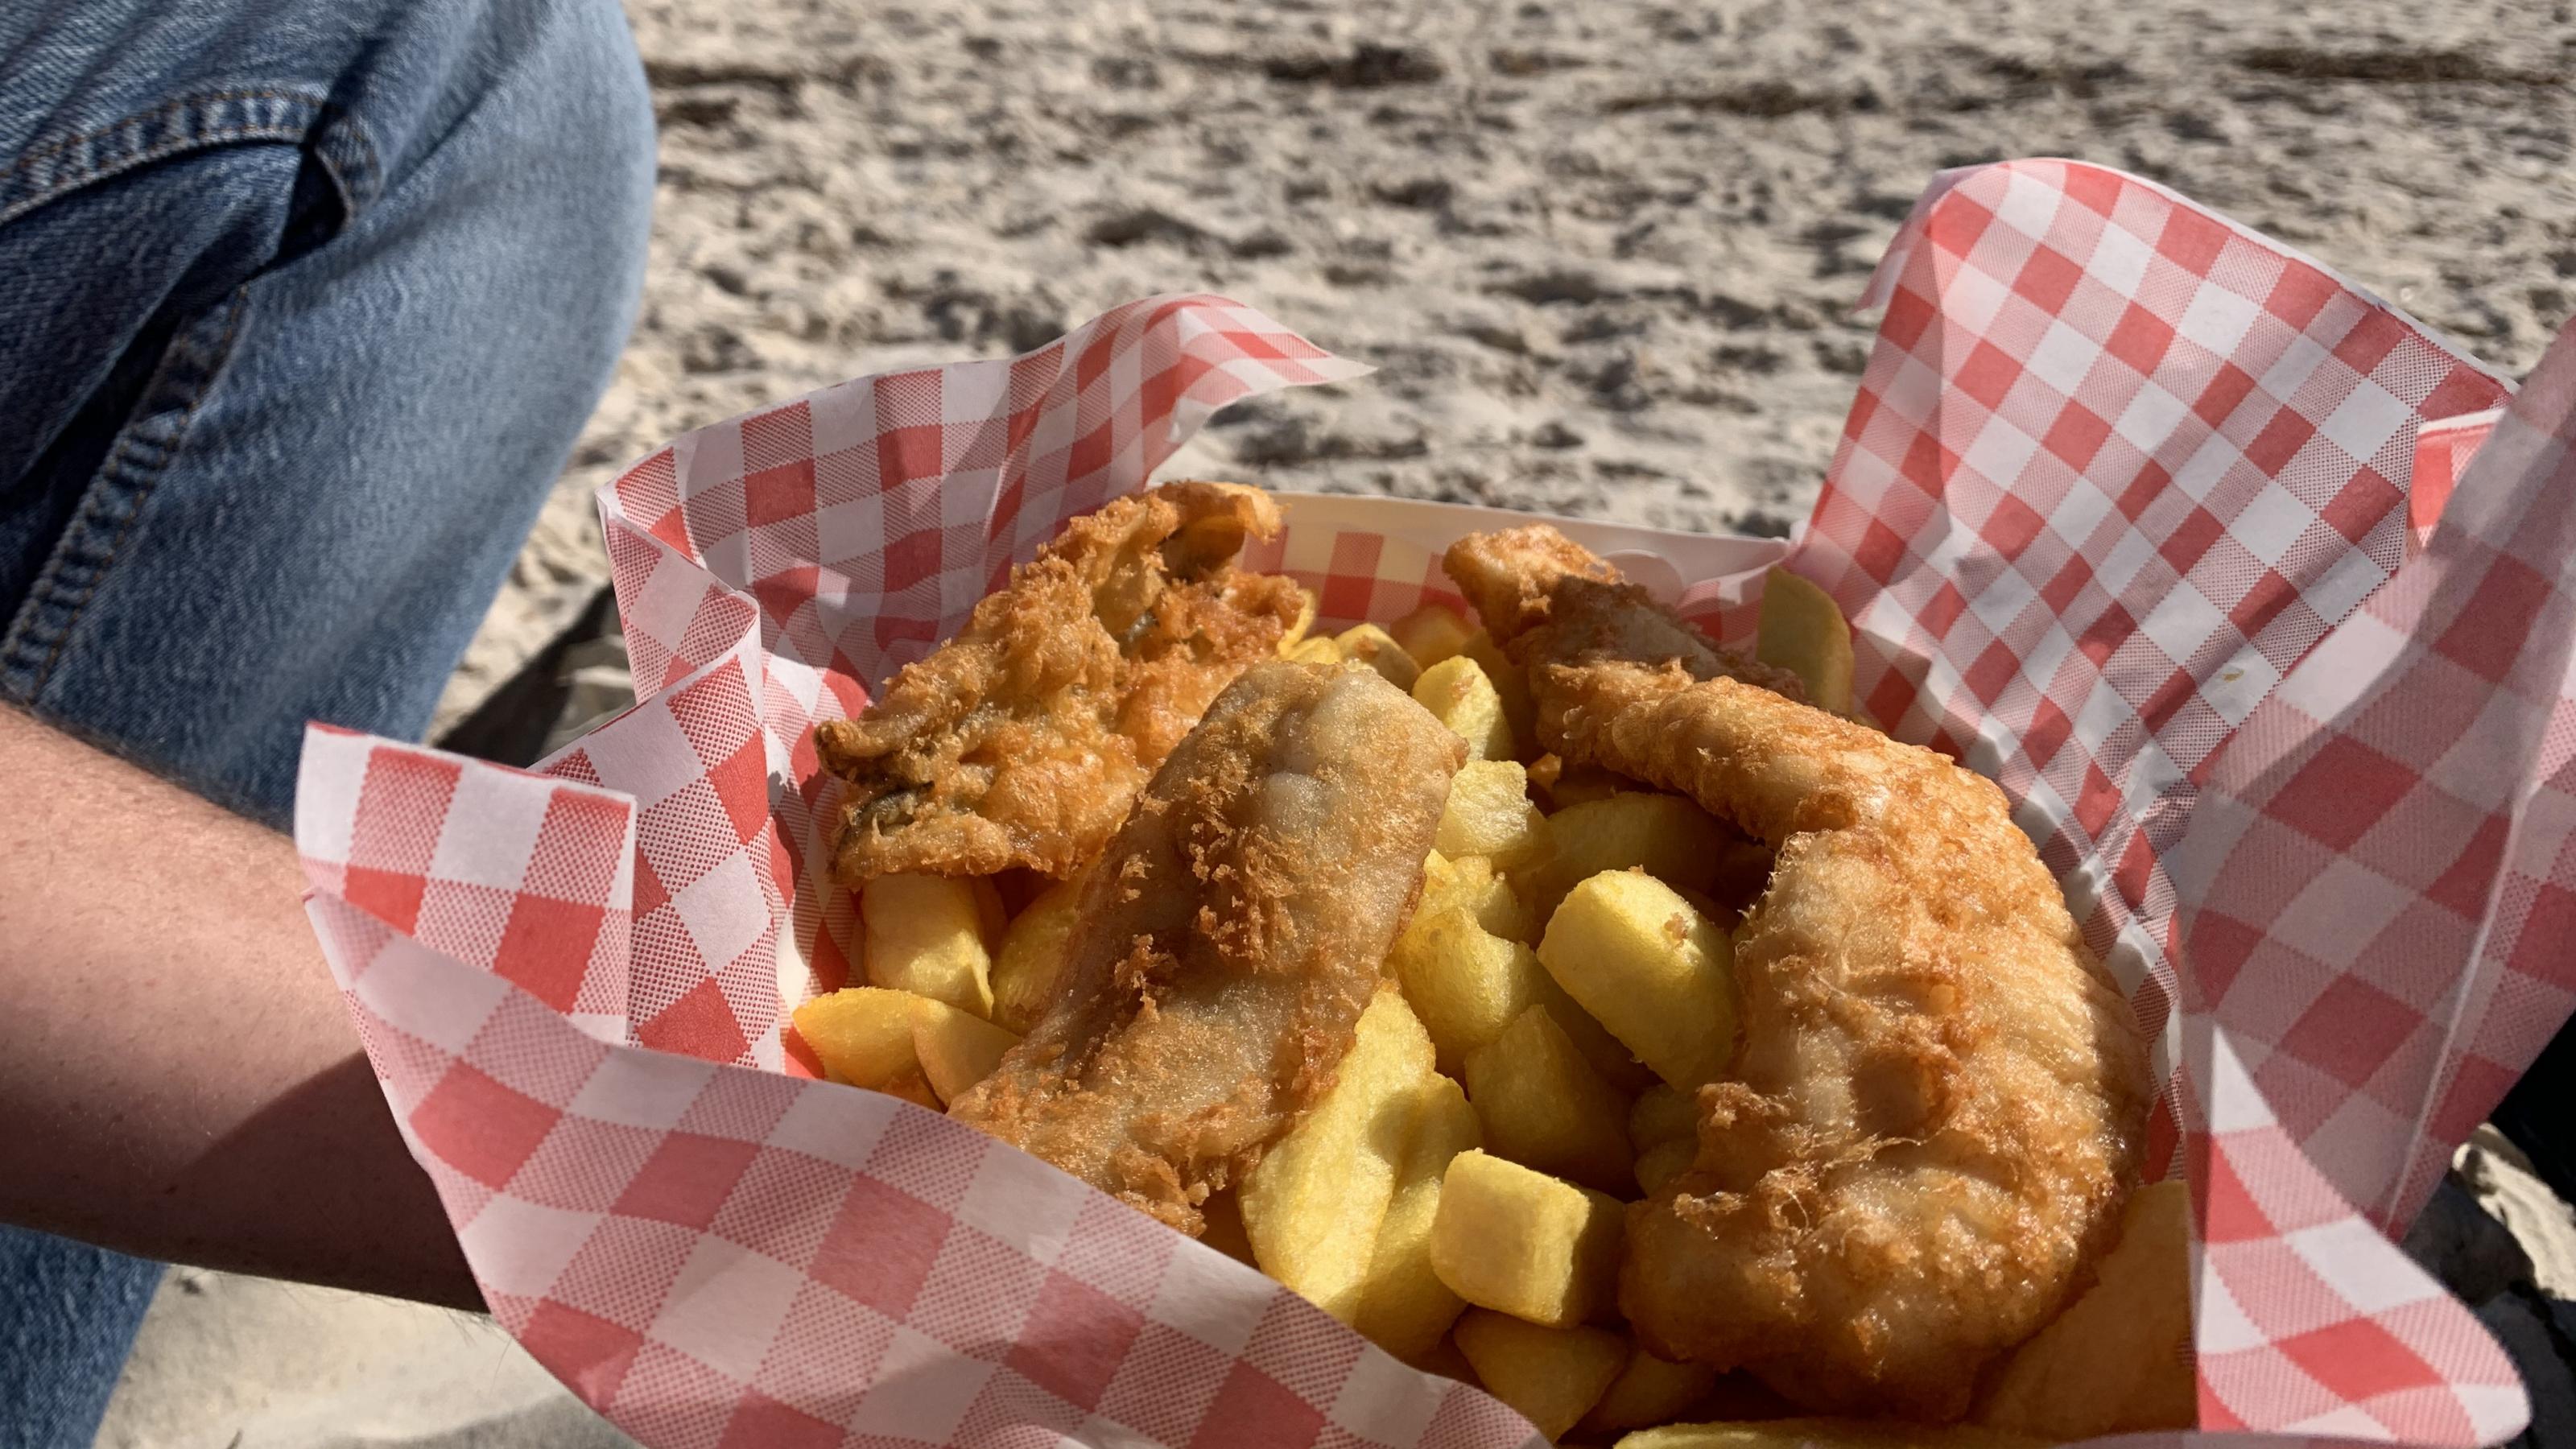 Das Foto zeigt eine Portion Fisch & Chips, die an einem Strand verspeist wird.